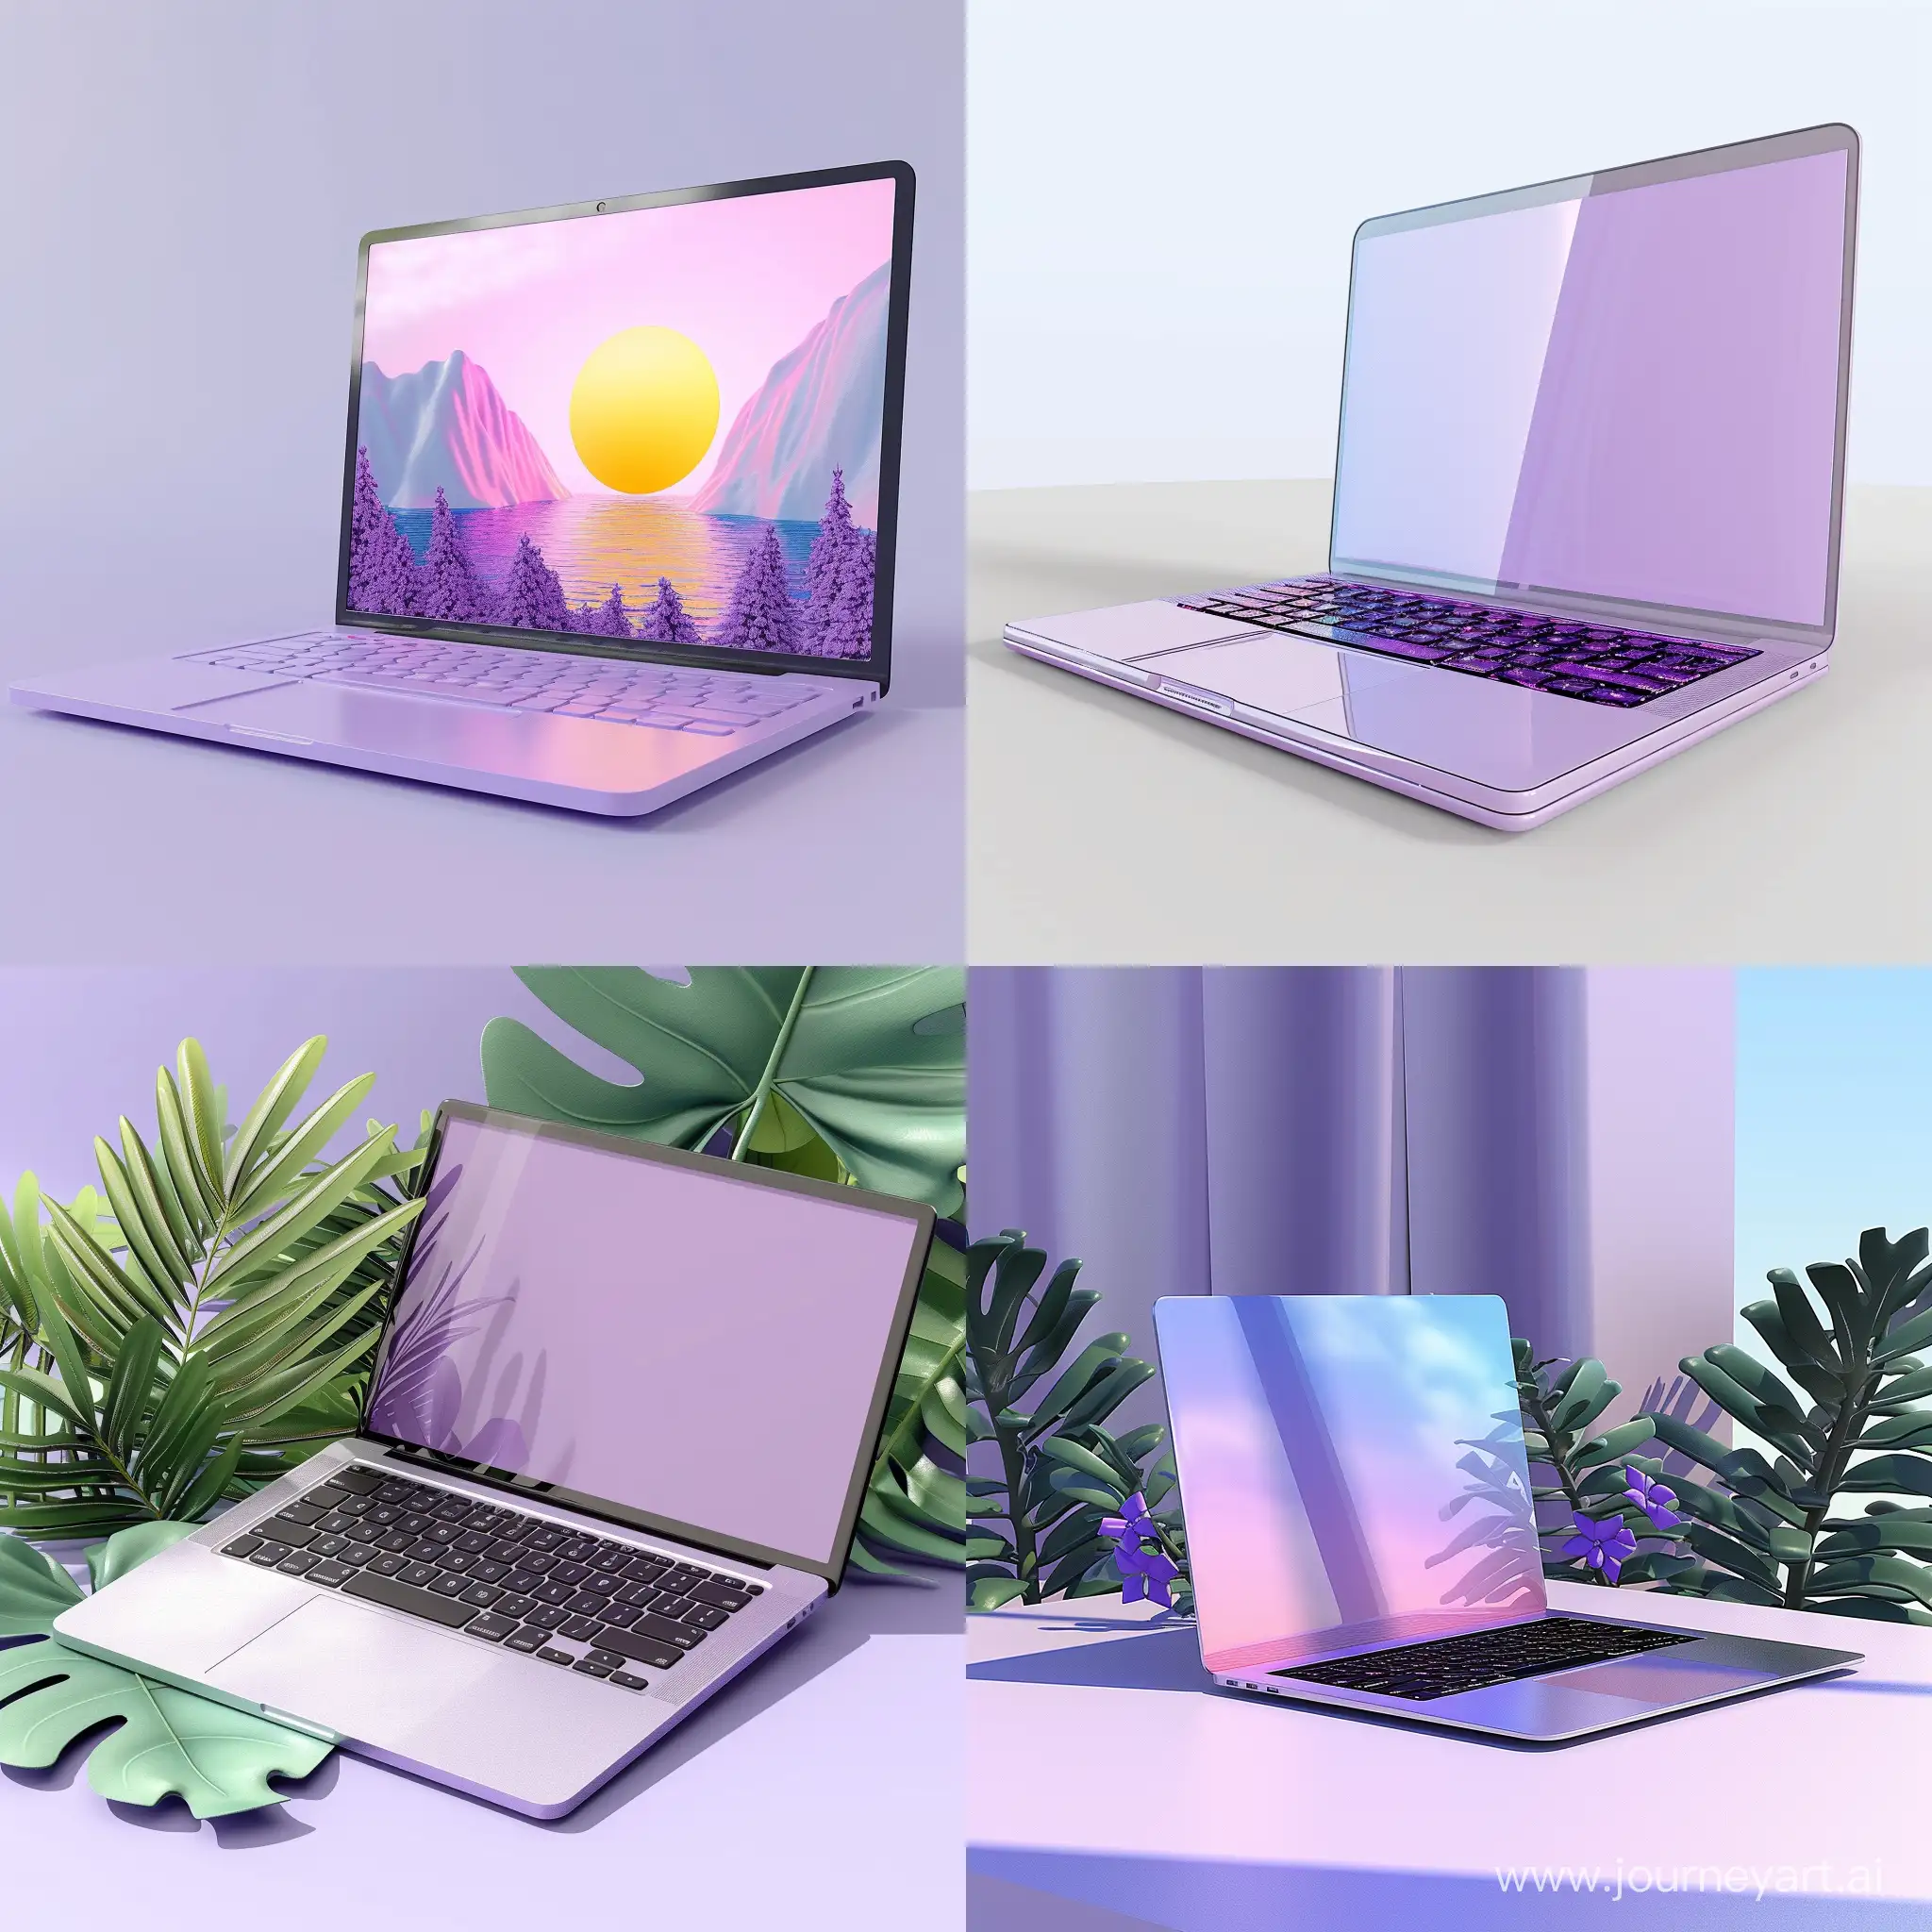 открытый ноутбук, 3d-иллюстрация, flat-иллюстрация, цифровая иллюстрация, фиолетовый цвет, пастельные тона, без фона, высокое качество